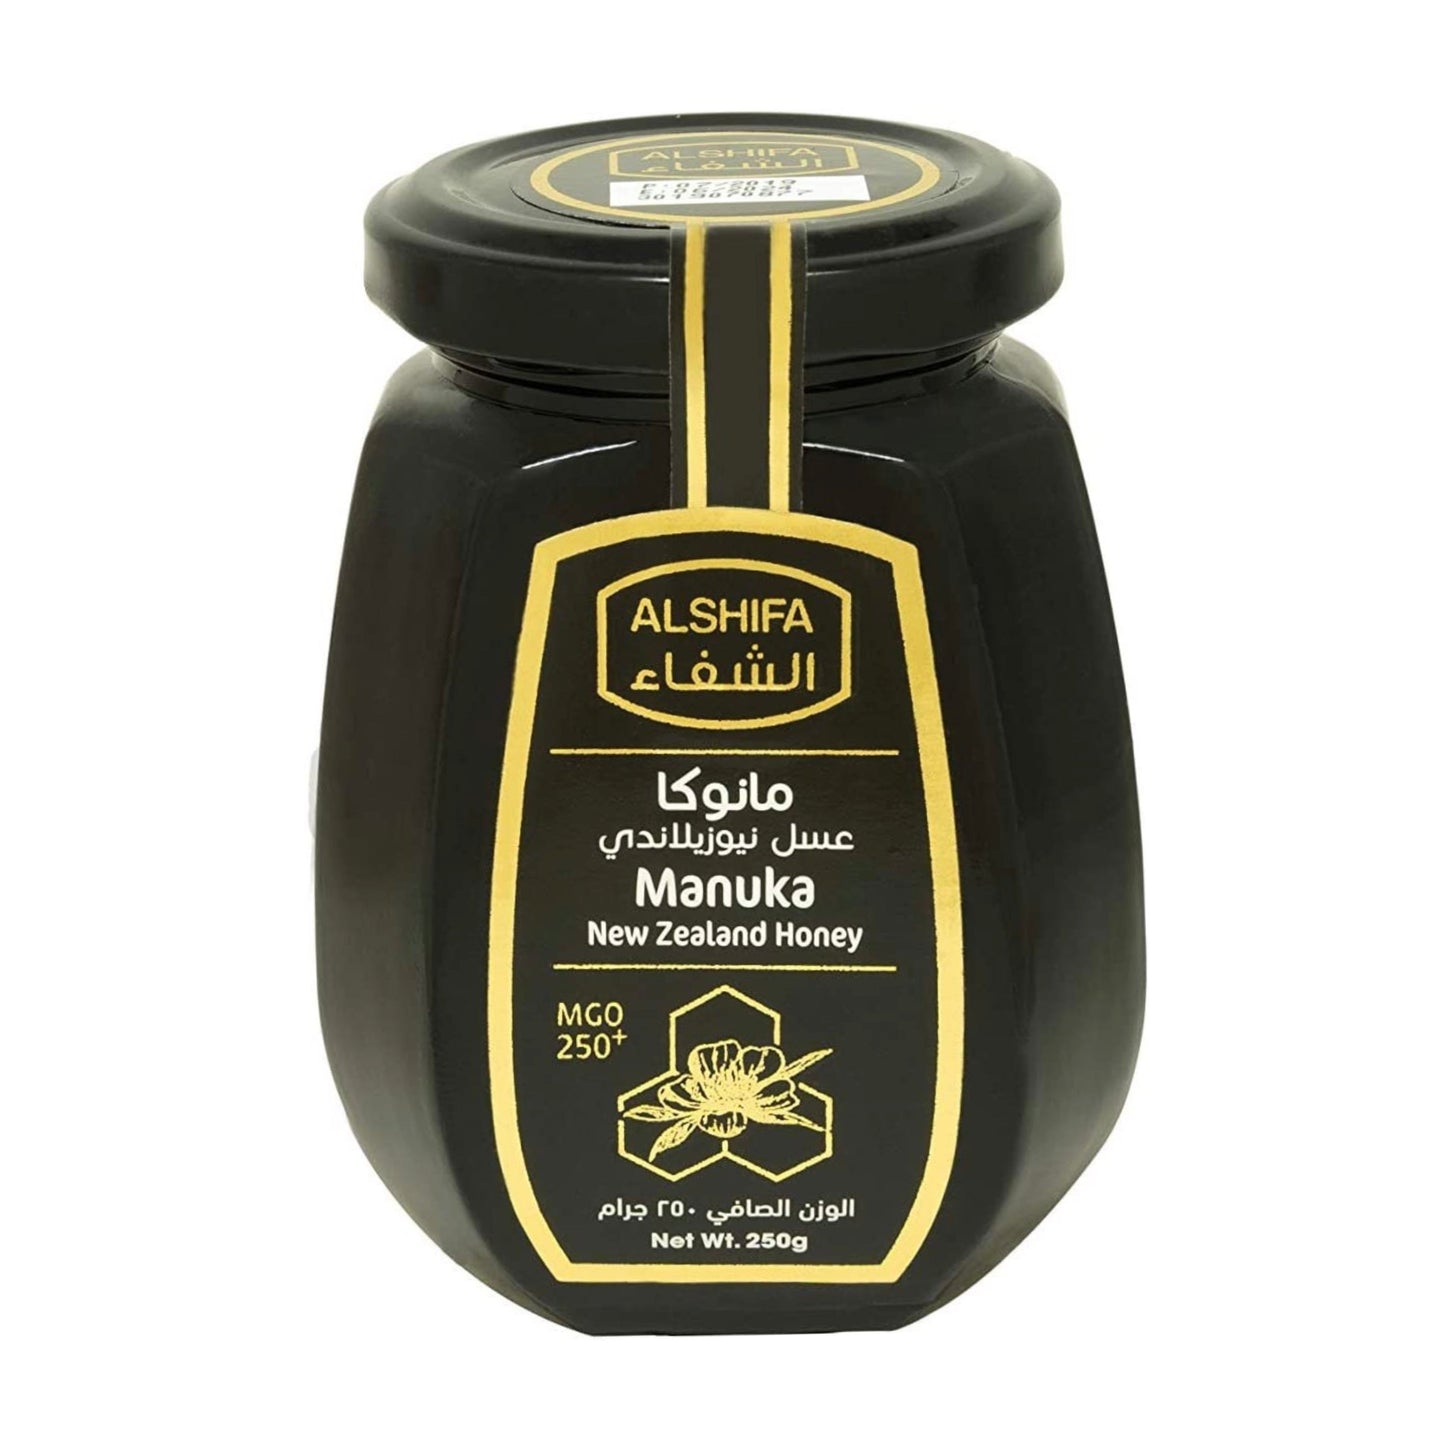 AlShifa Manuka Honey (Gmo 250+) - 250gm/6pk